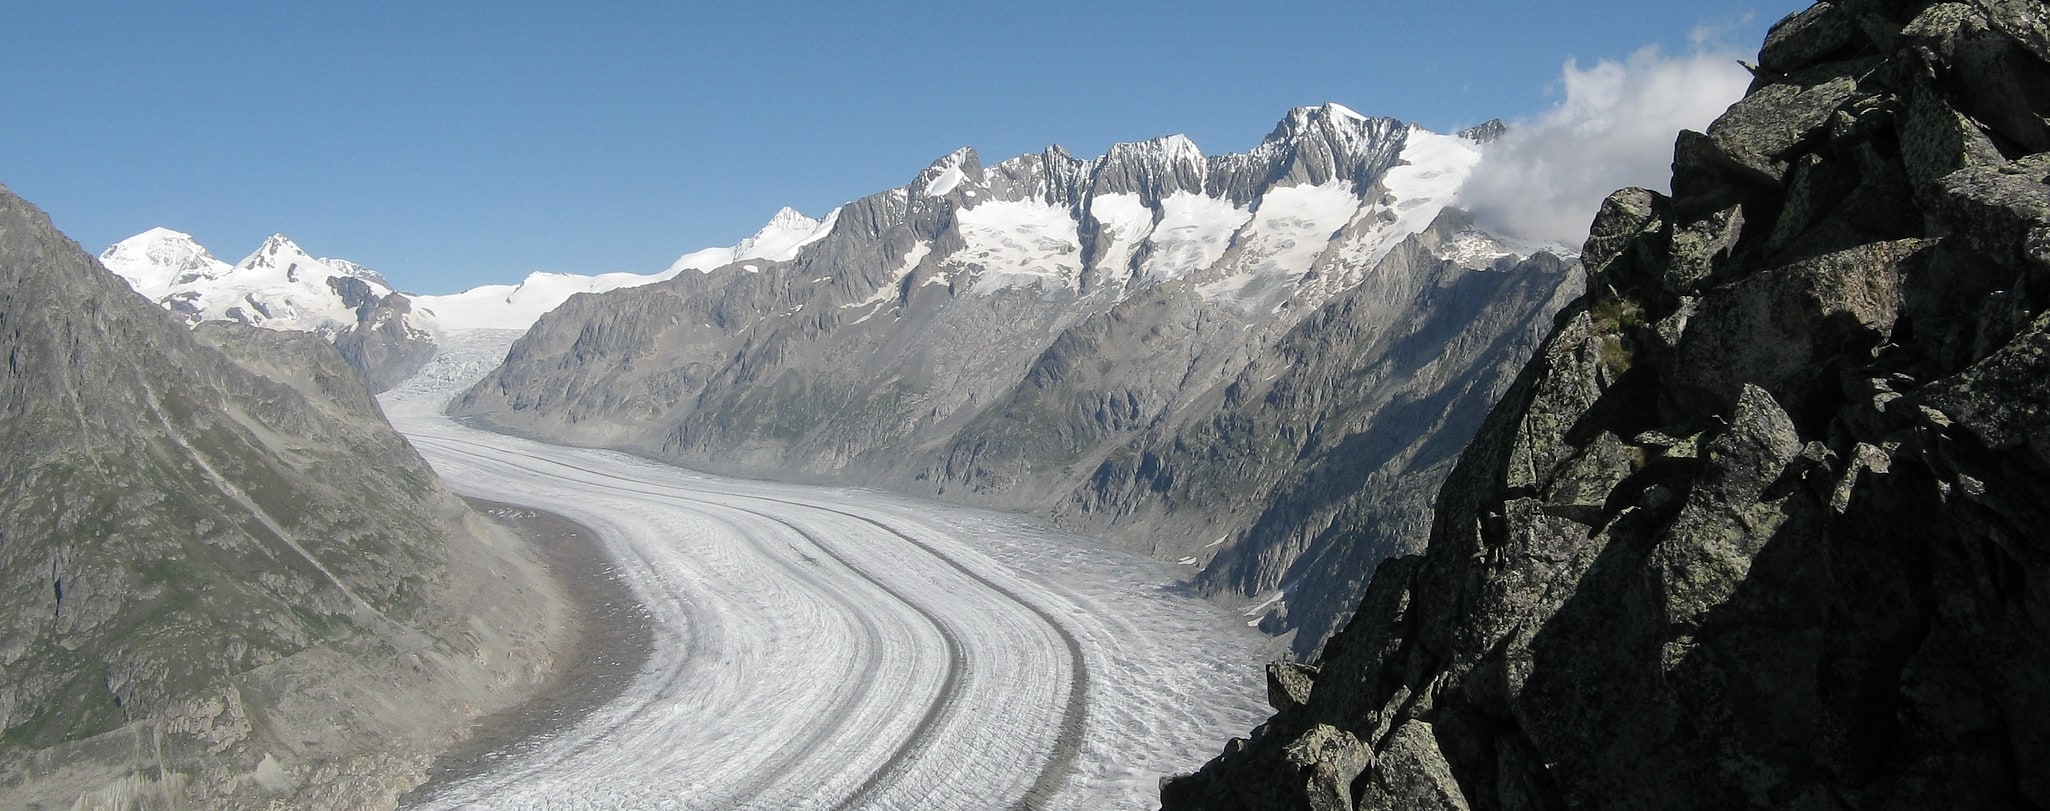 Alpes suisses Jungfrau-Aletsch, Suisse